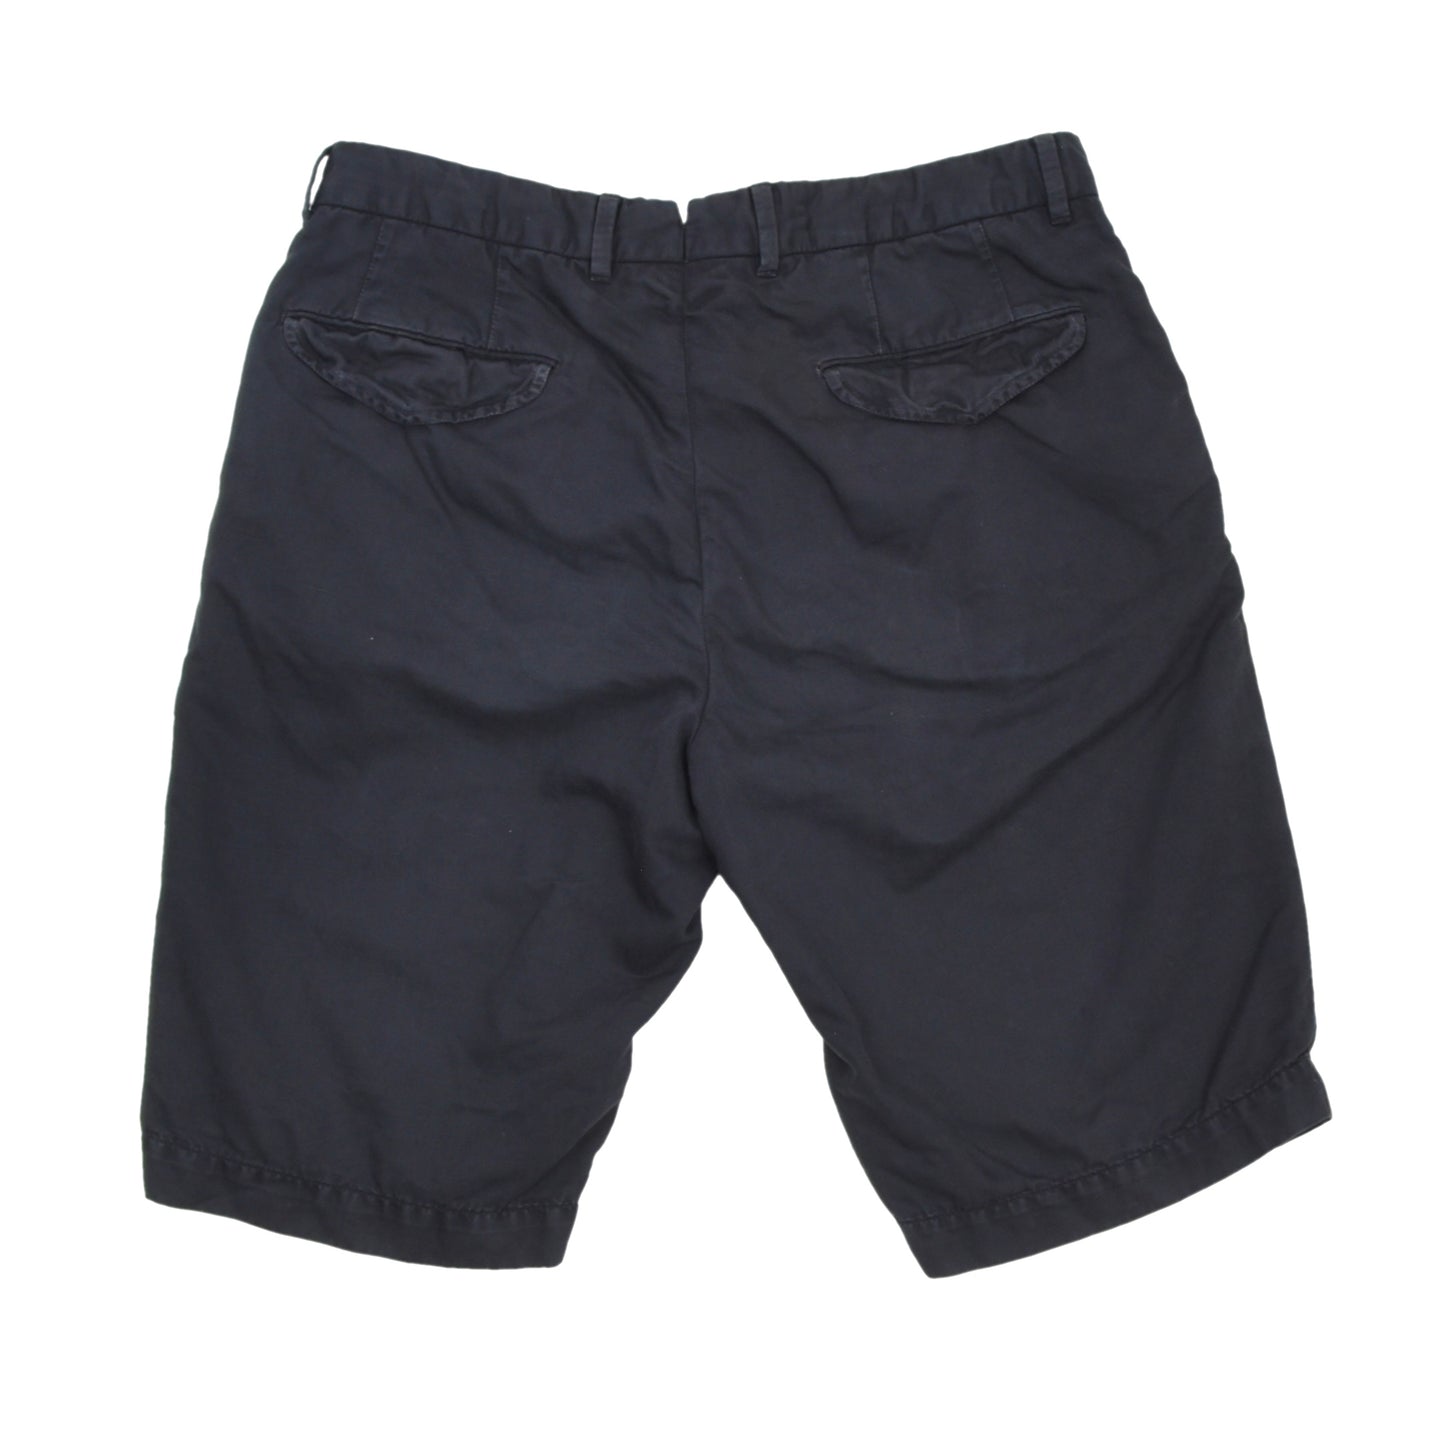 Ermenegildo Zegna Cotton-Linen Shorts Size 48 - Navy Blue